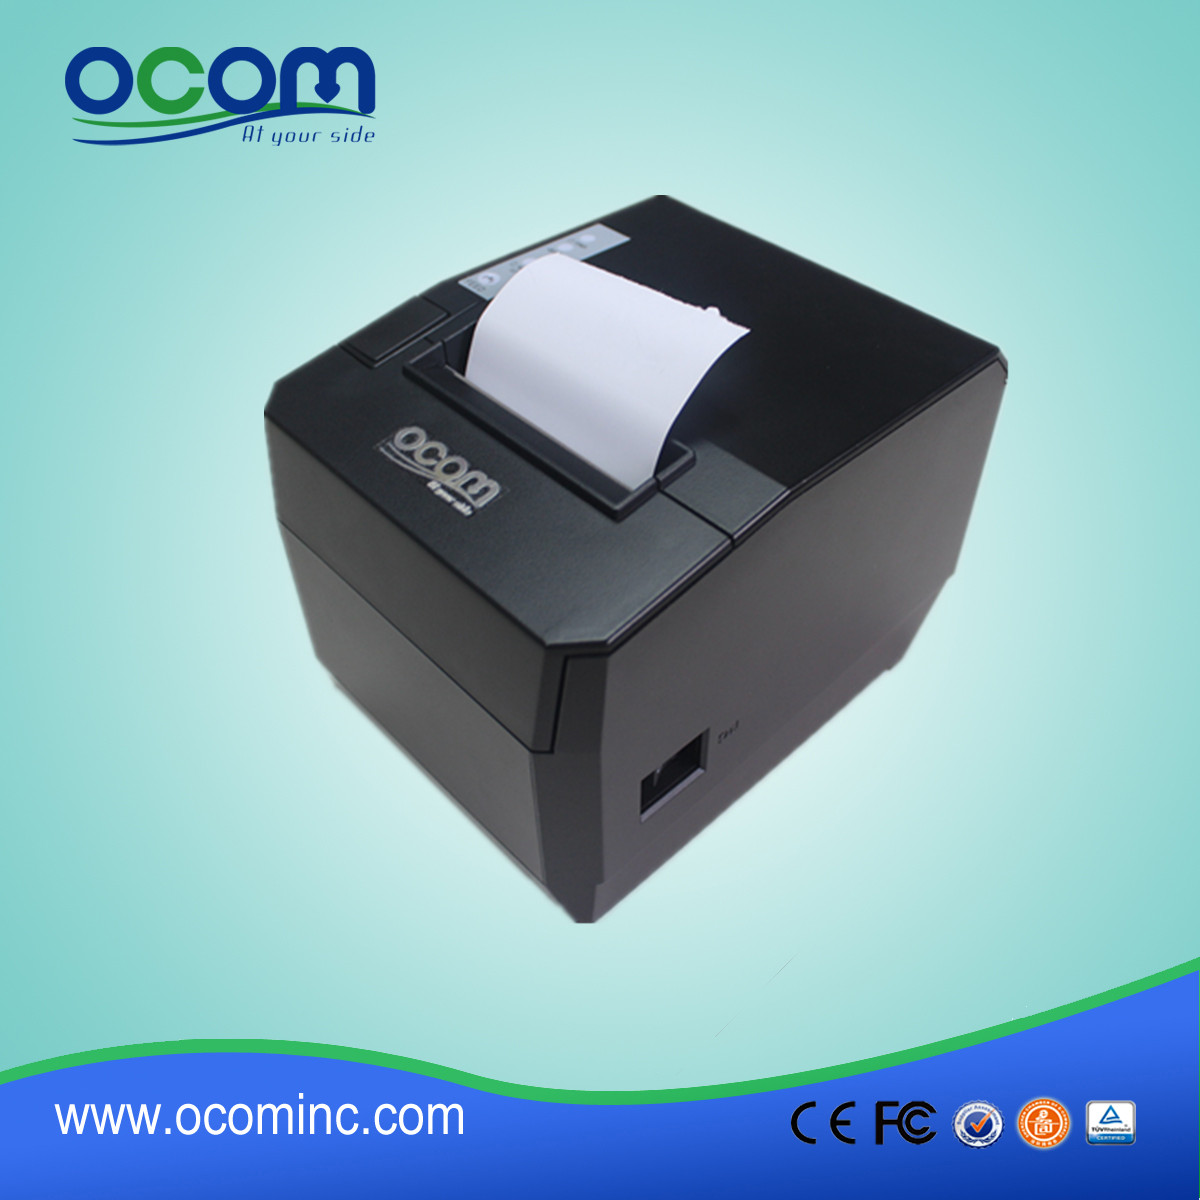 Θερμικός εκτυπωτής πολλαπλών διεπαφών 80mm με Wi-Fi και Bluetooth (OCPP -88A)